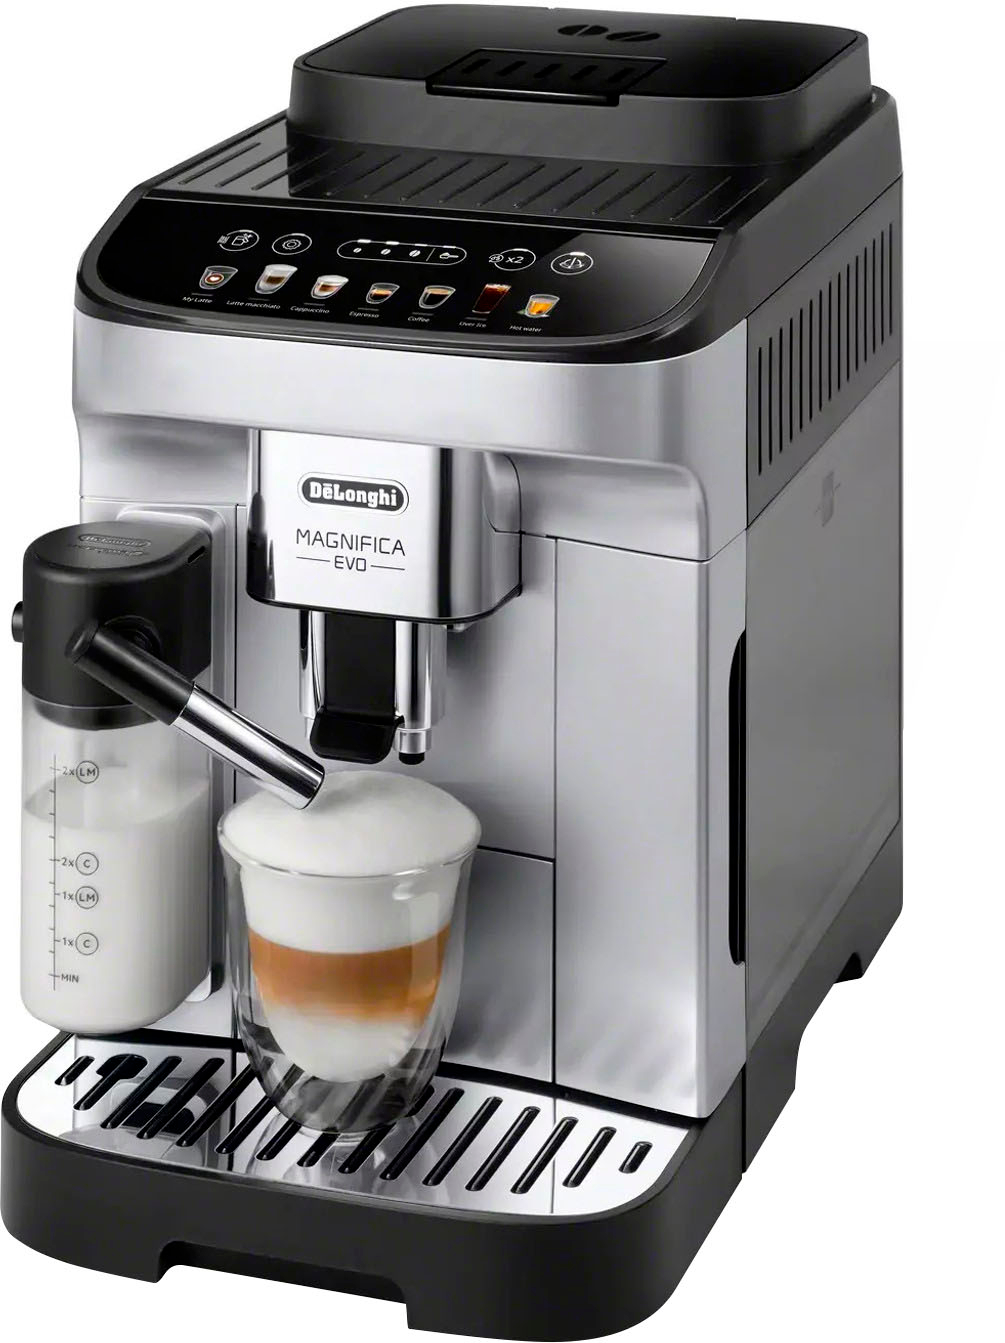 De'Longhi Magnifica Evo Coffee and Espresso Machine Silver